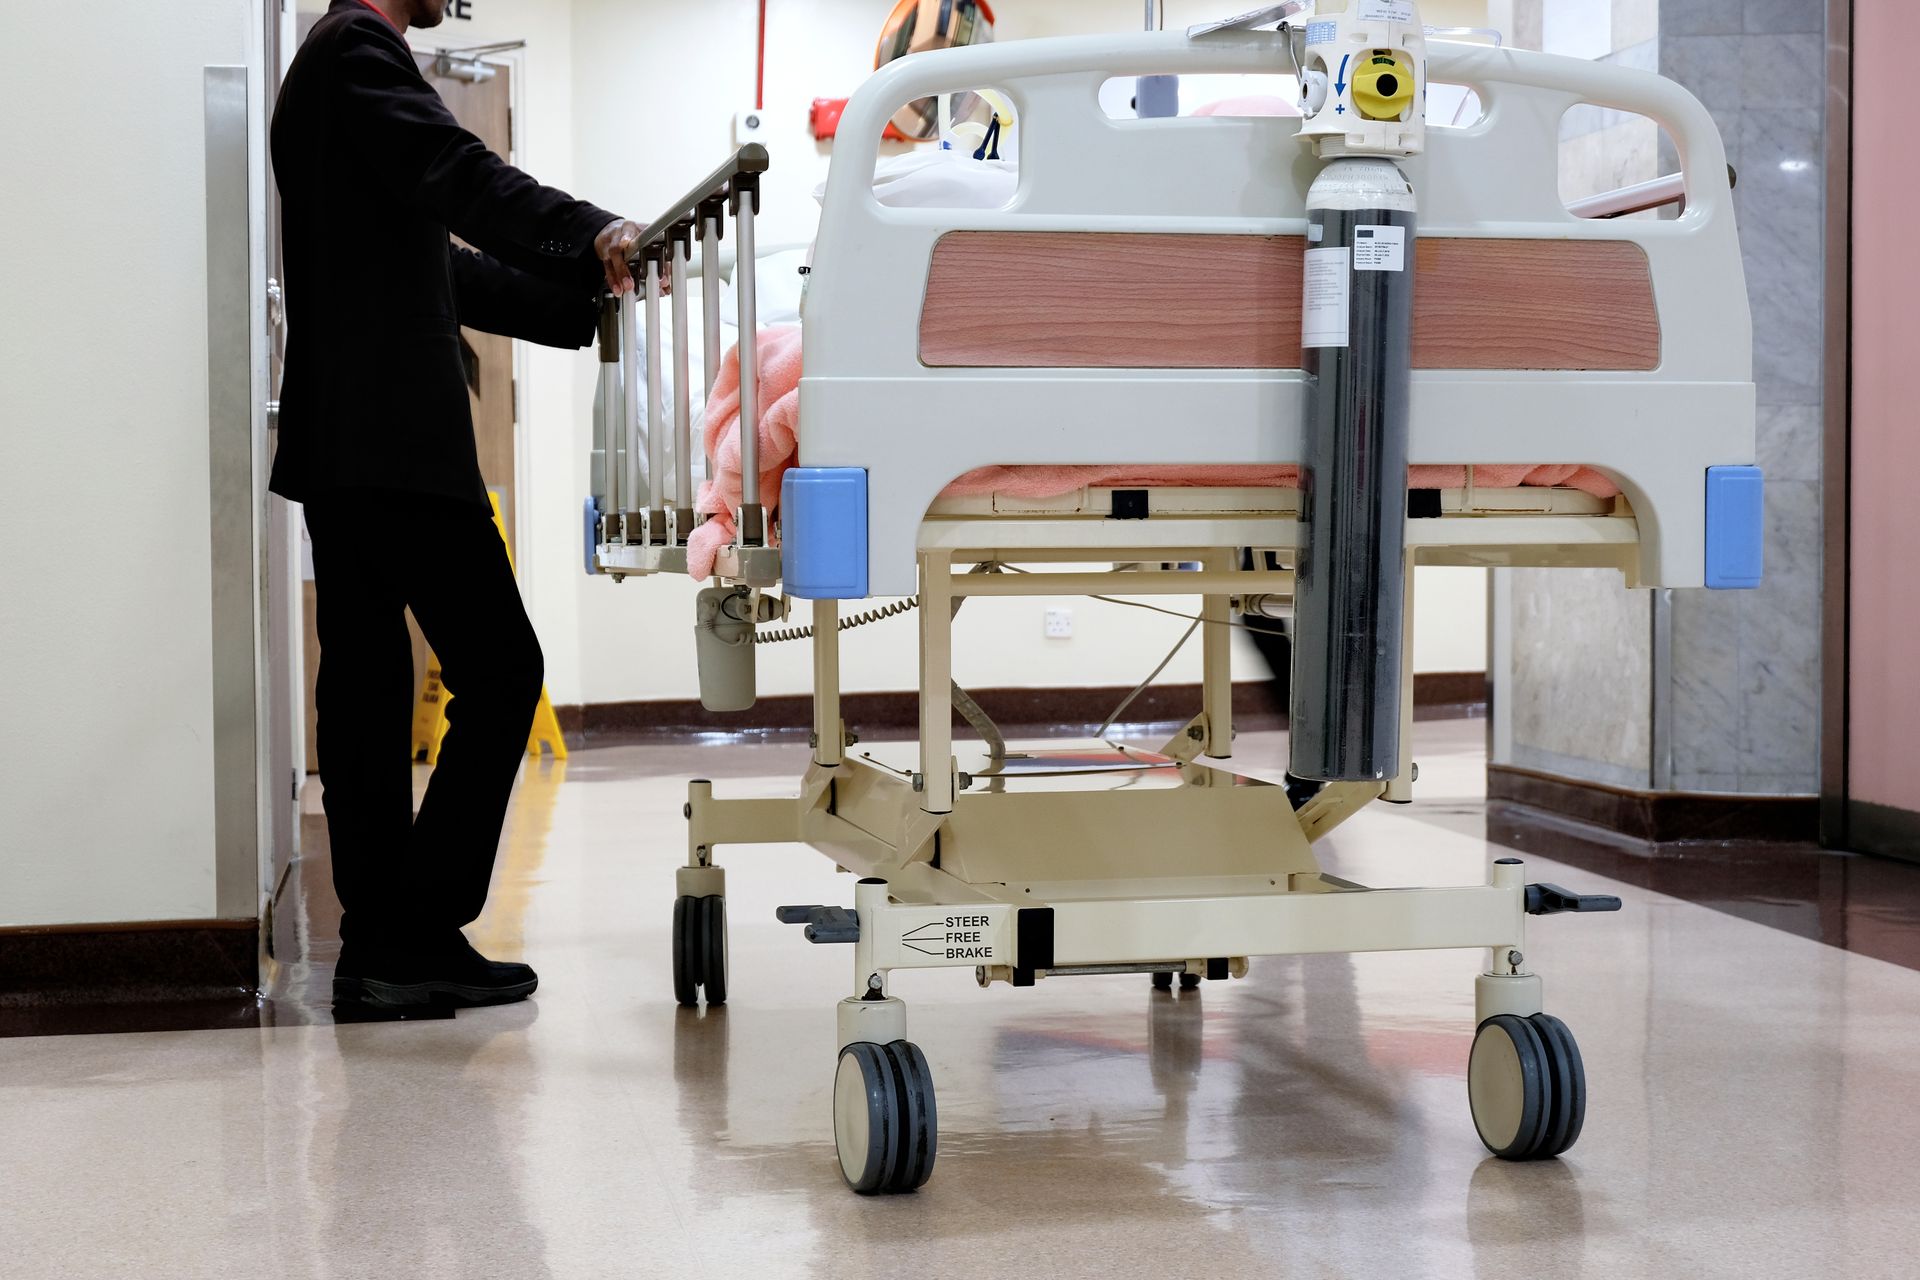 Hospitalisation d'une personne sur un lit médicalisé